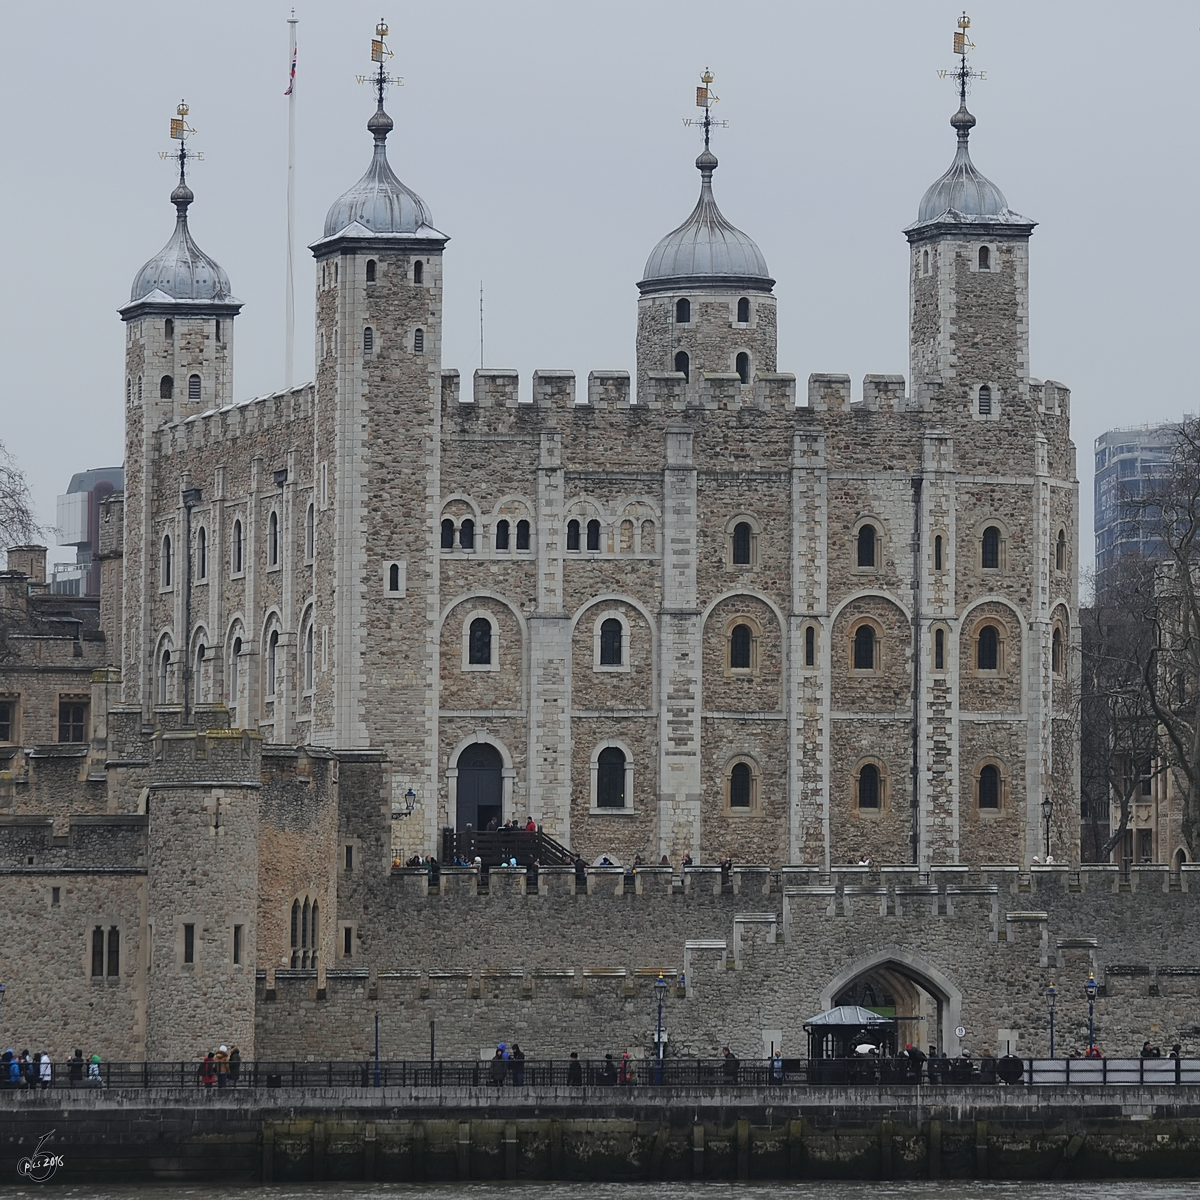 Der White Tower als Teil des Towers von London. (Mrz 2013)